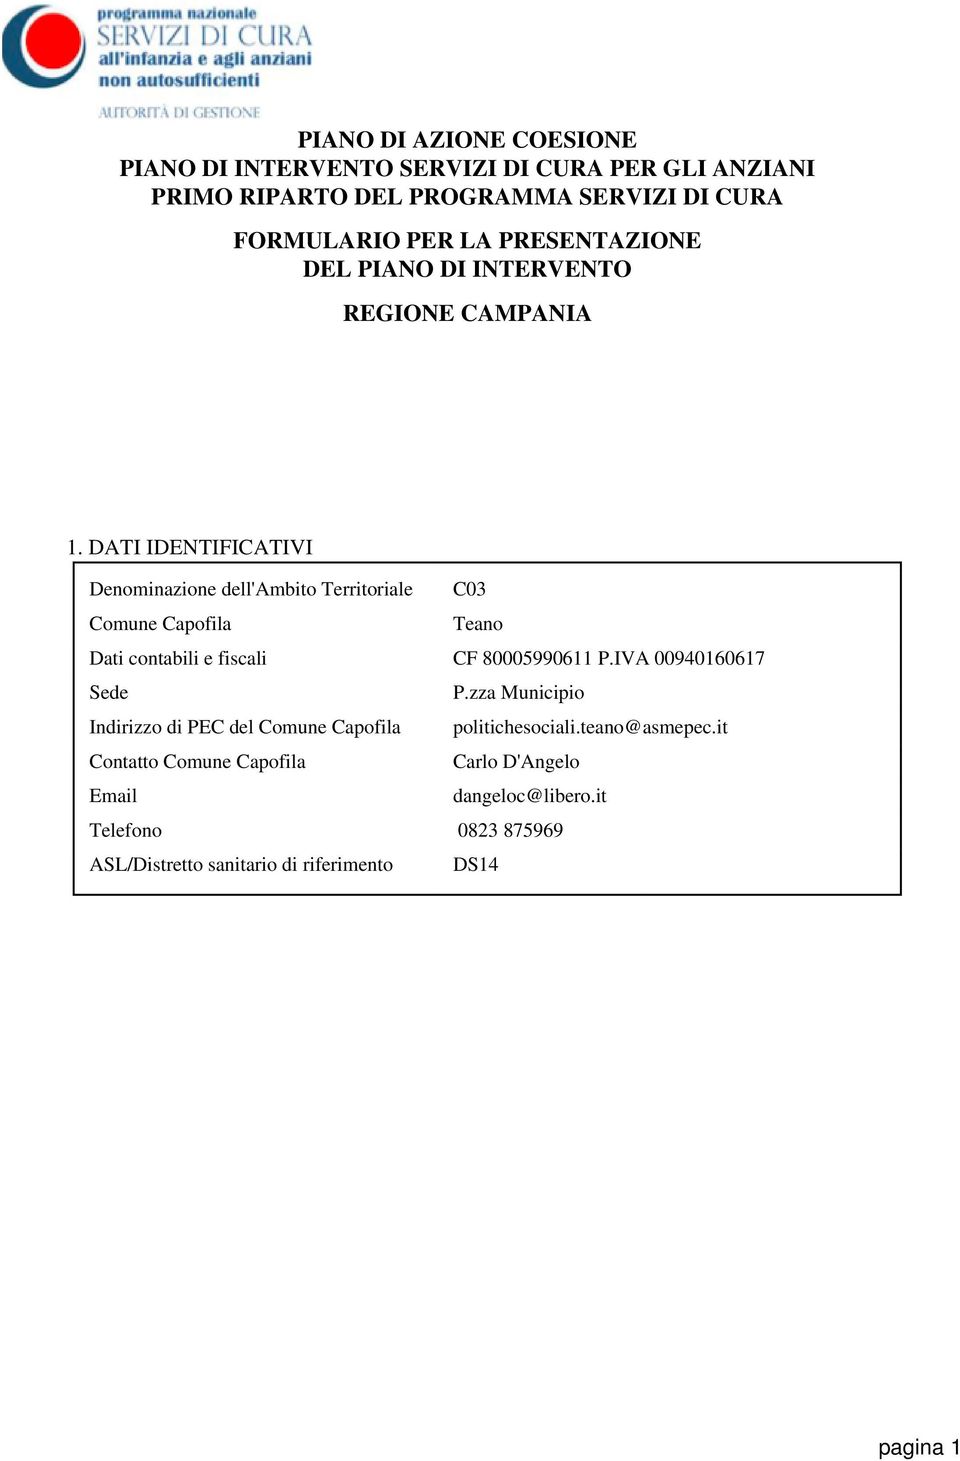 DATI IDENTIFICATIVI Denominazione dell'ambito Territoriale C03 Comune Capofila Teano Dati contabili e fiscali CF 80005990611 P.